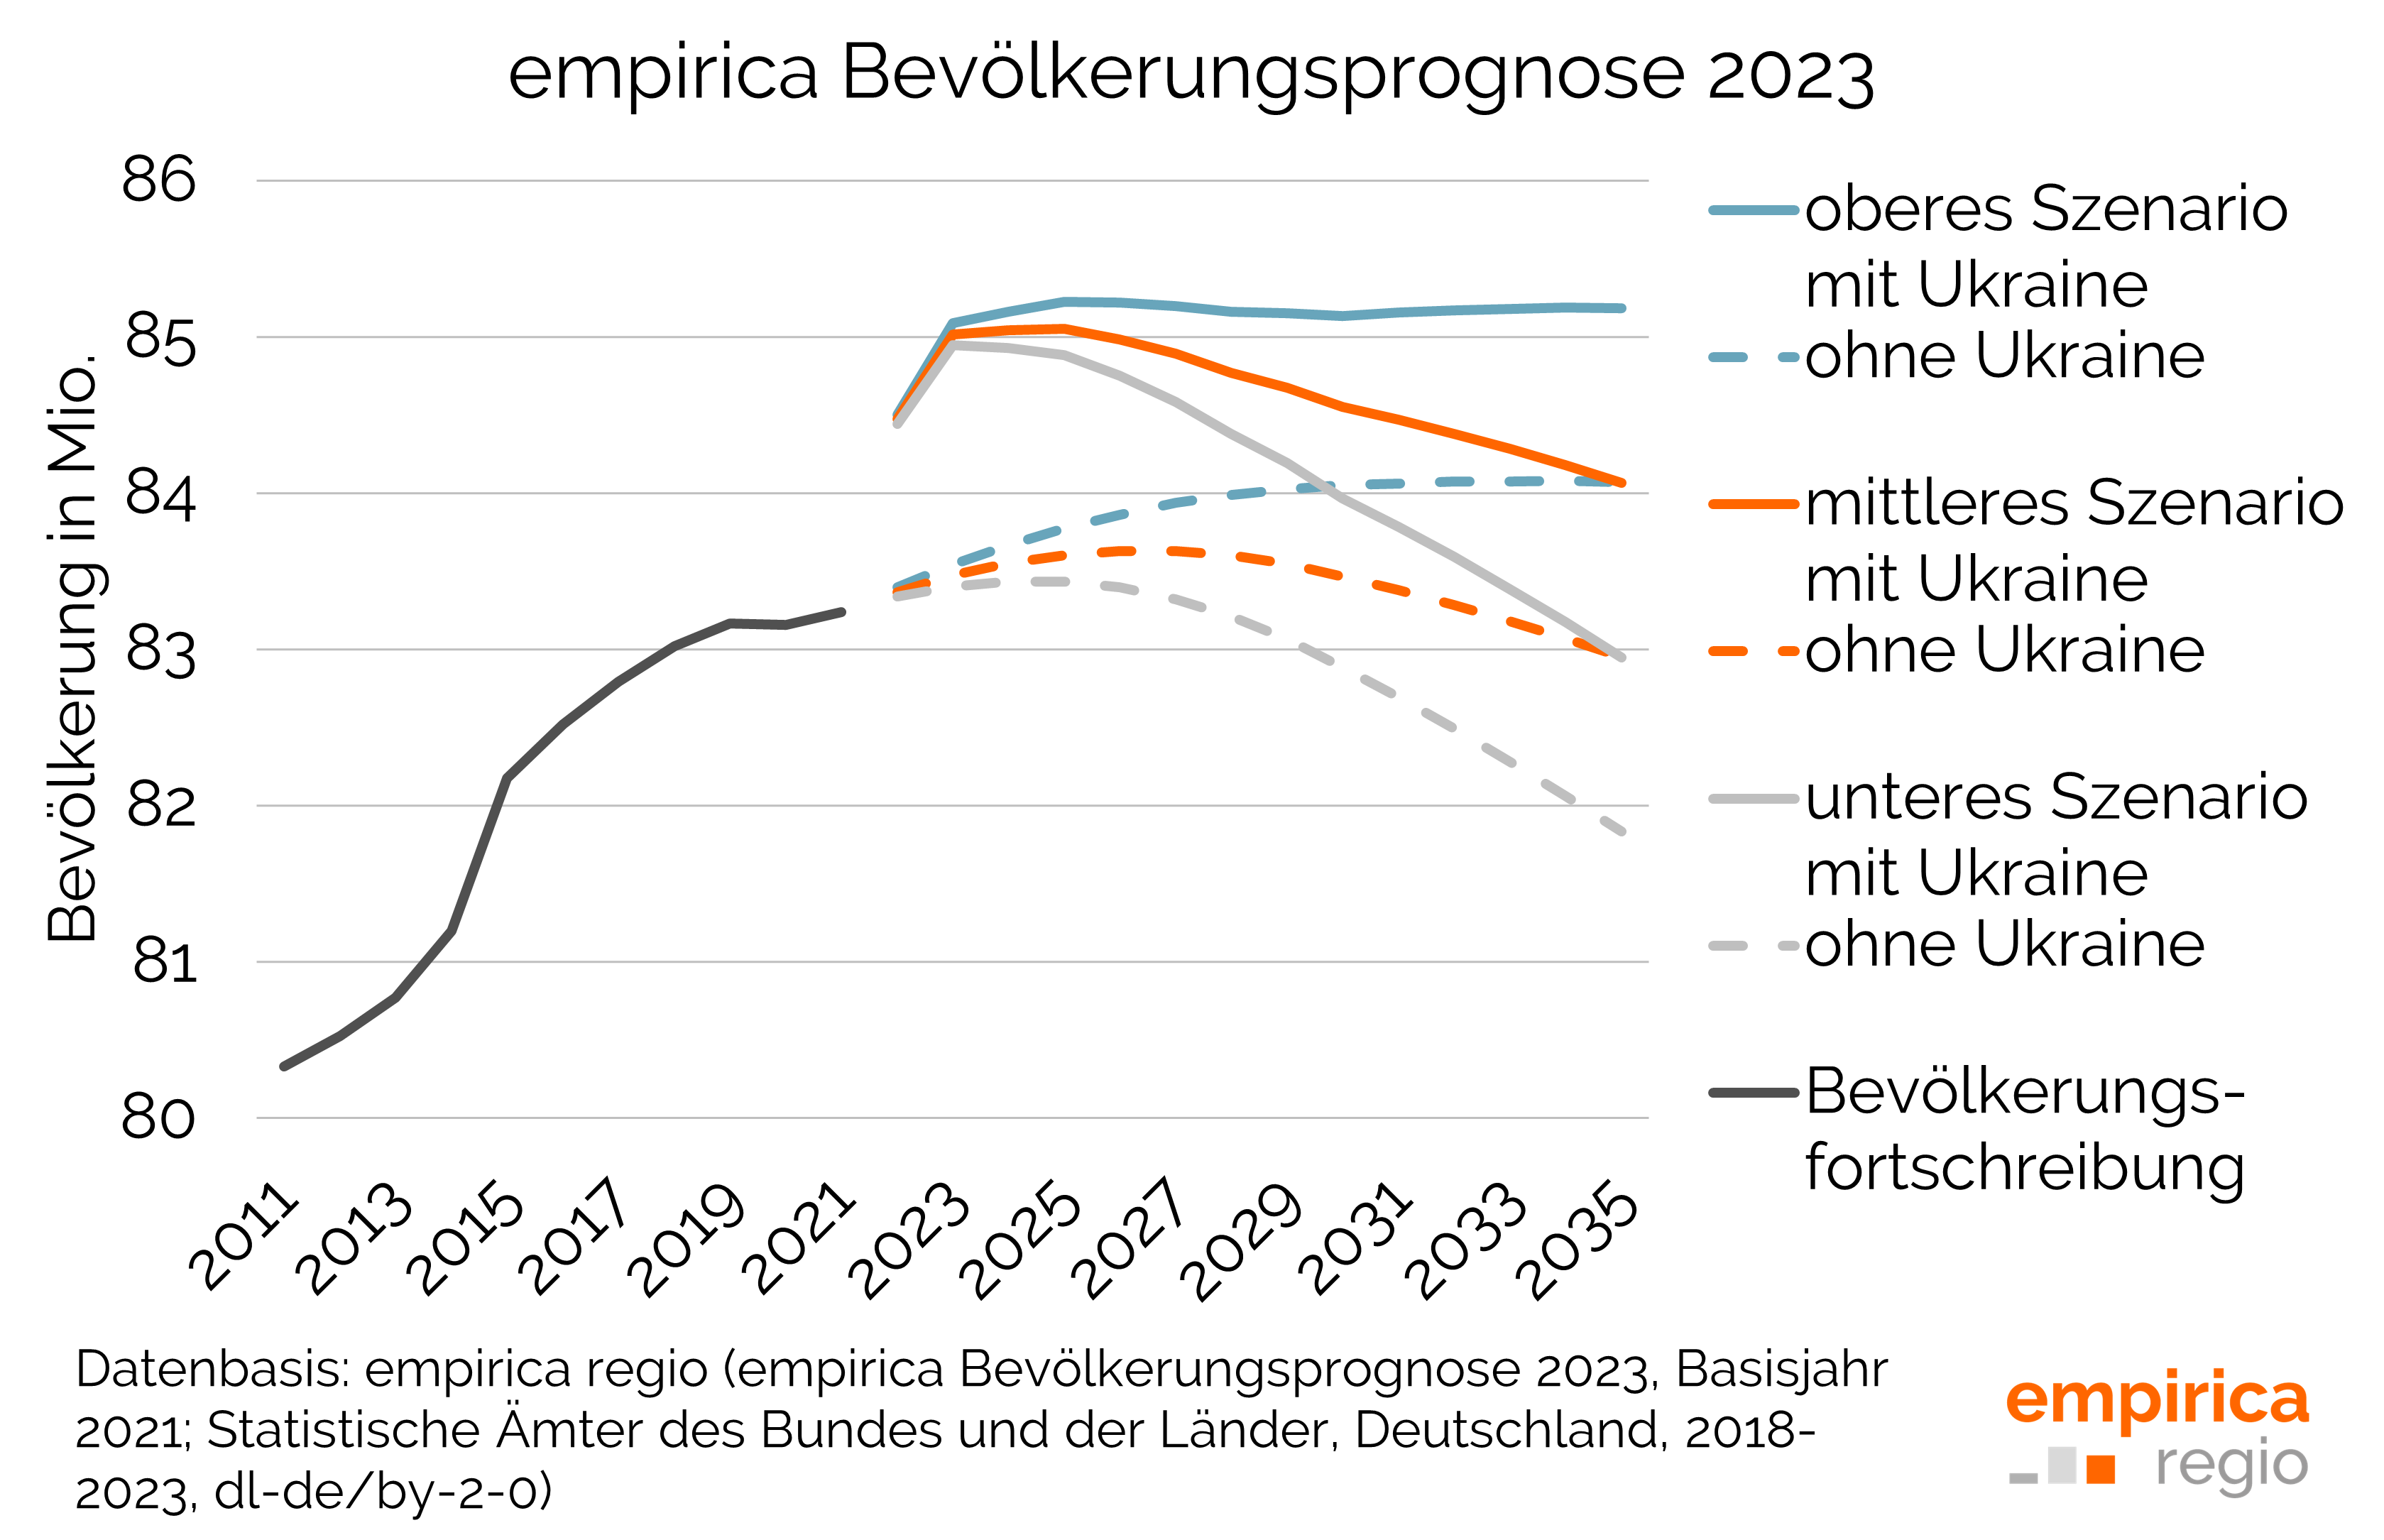 empirica Bevölkerungsprognose 2023 - Drei Szenarien mit und ohne Ukraine im Vergleich